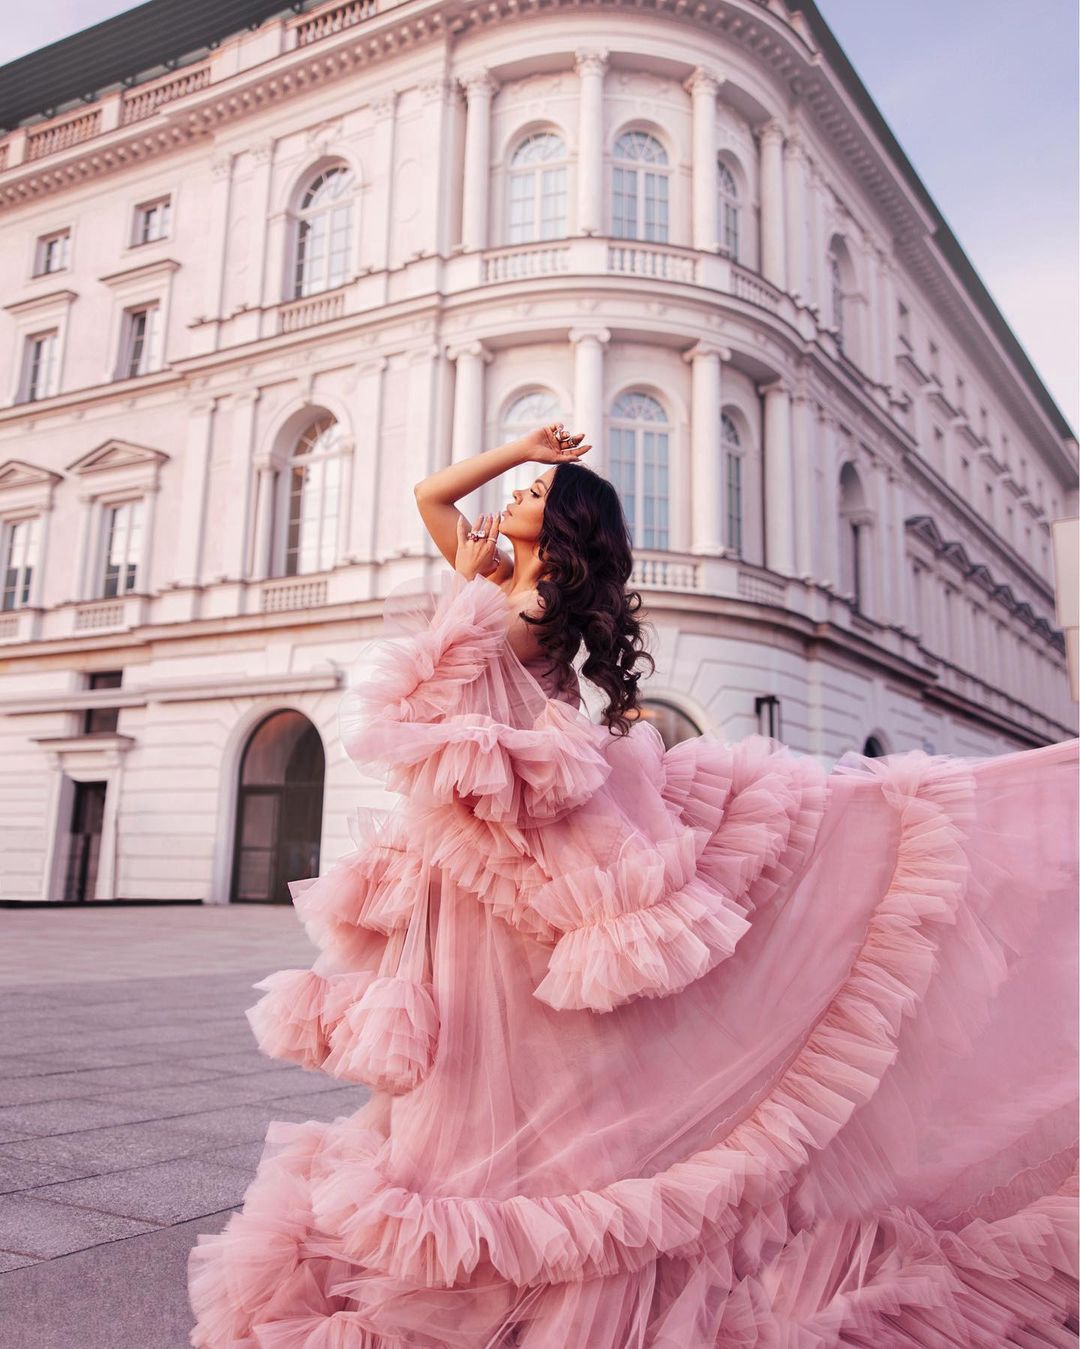 Sylwia Bomba w baśniowej sukni zachwyciła fanów / Instagram.com / sylwiabomba